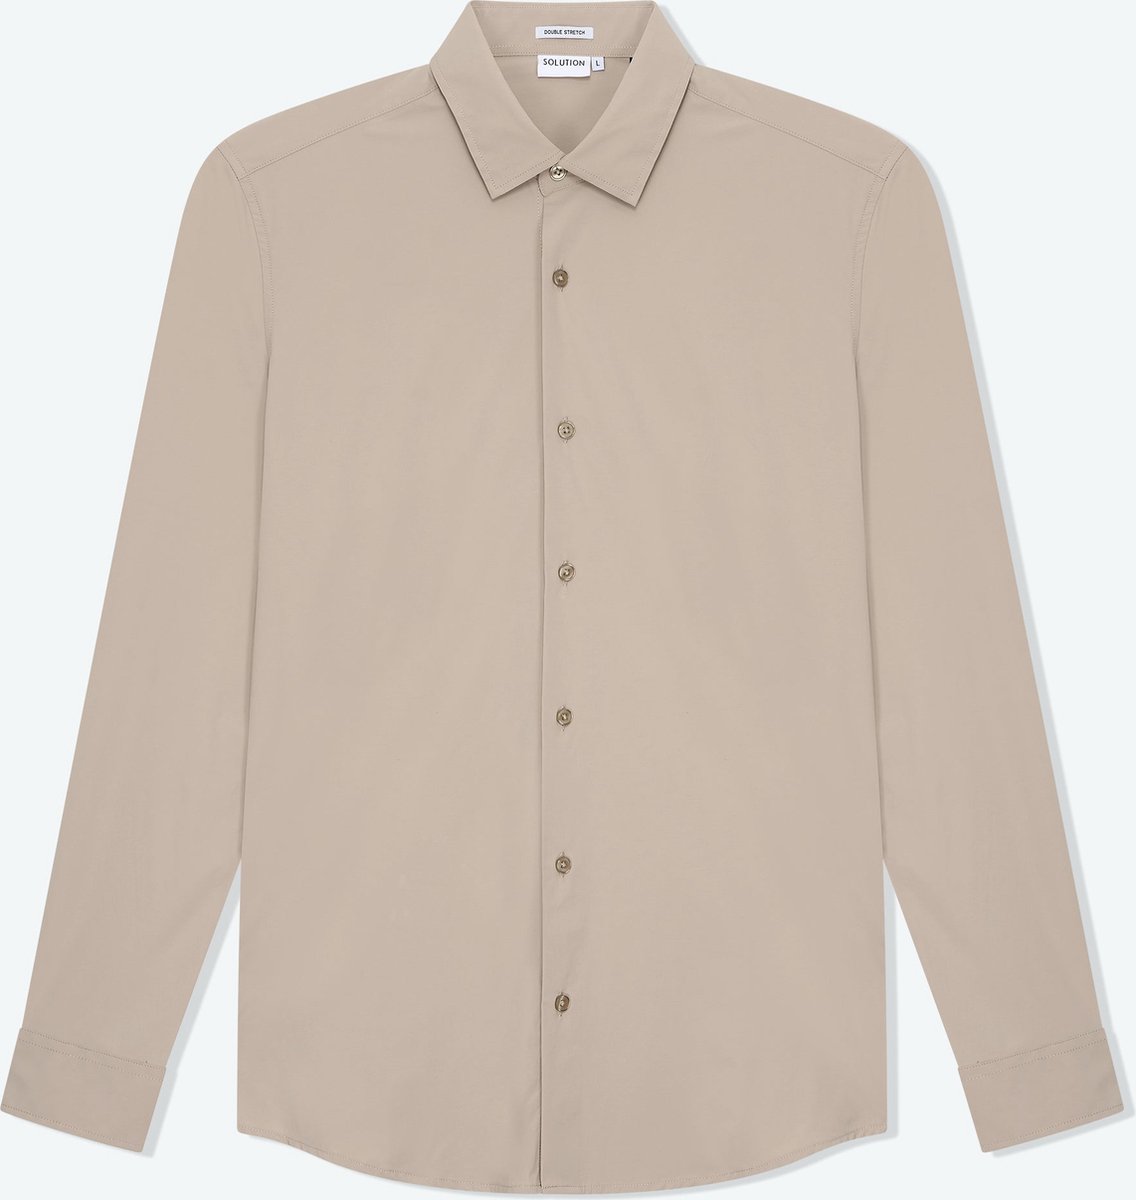 Solution Clothing Felix - Casual Overhemd - Kreukvrij - Lange Mouw - Volwassenen - Heren - Mannen - Beige - XXL - XXL - Solution Clothing